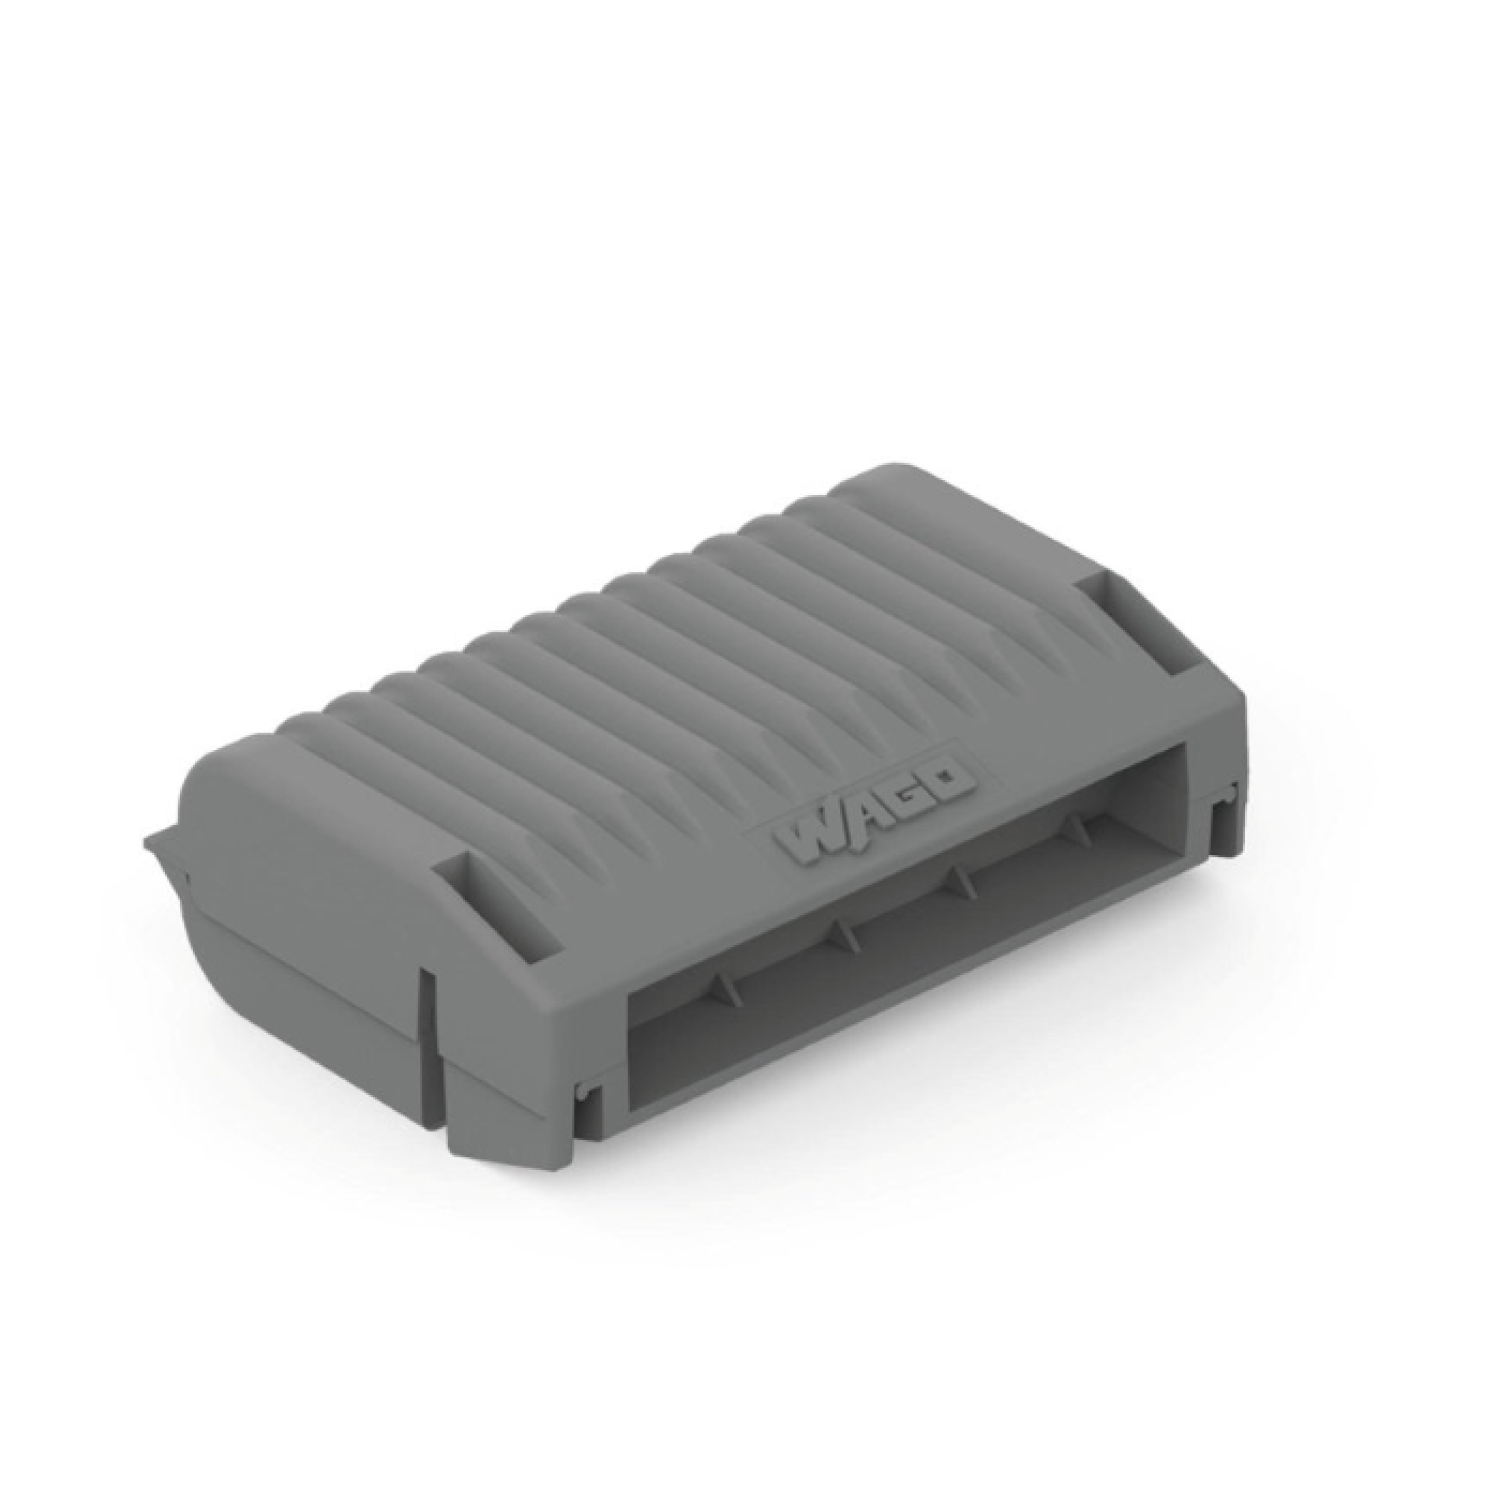 WAGO Gelbox pour connecteurs de fils - max. 4mm² - IPX8 - taille 3 - 3 pc.